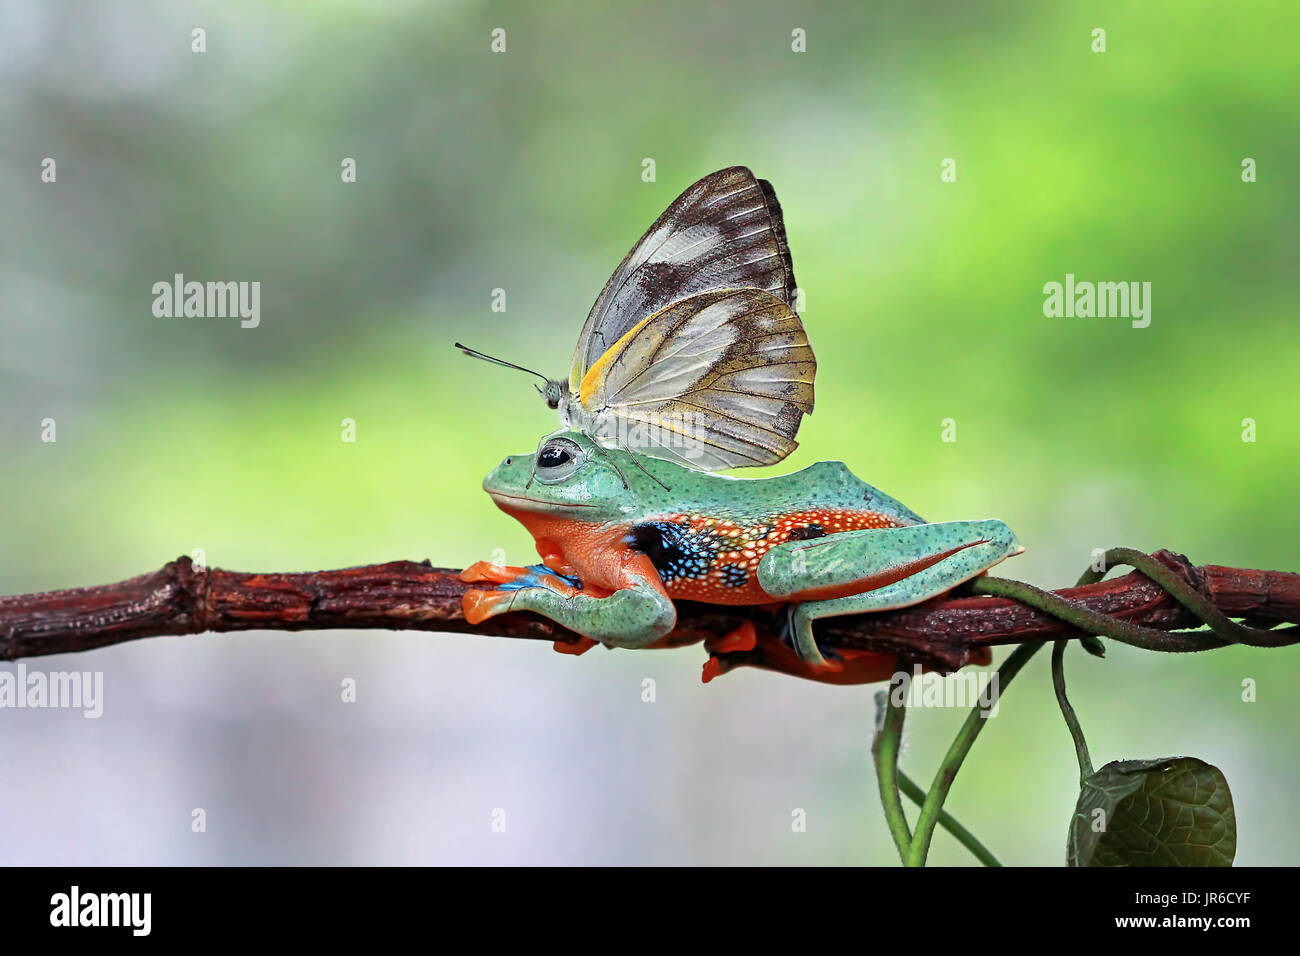 Farfalla posata su una raganella, Indonesia Foto Stock